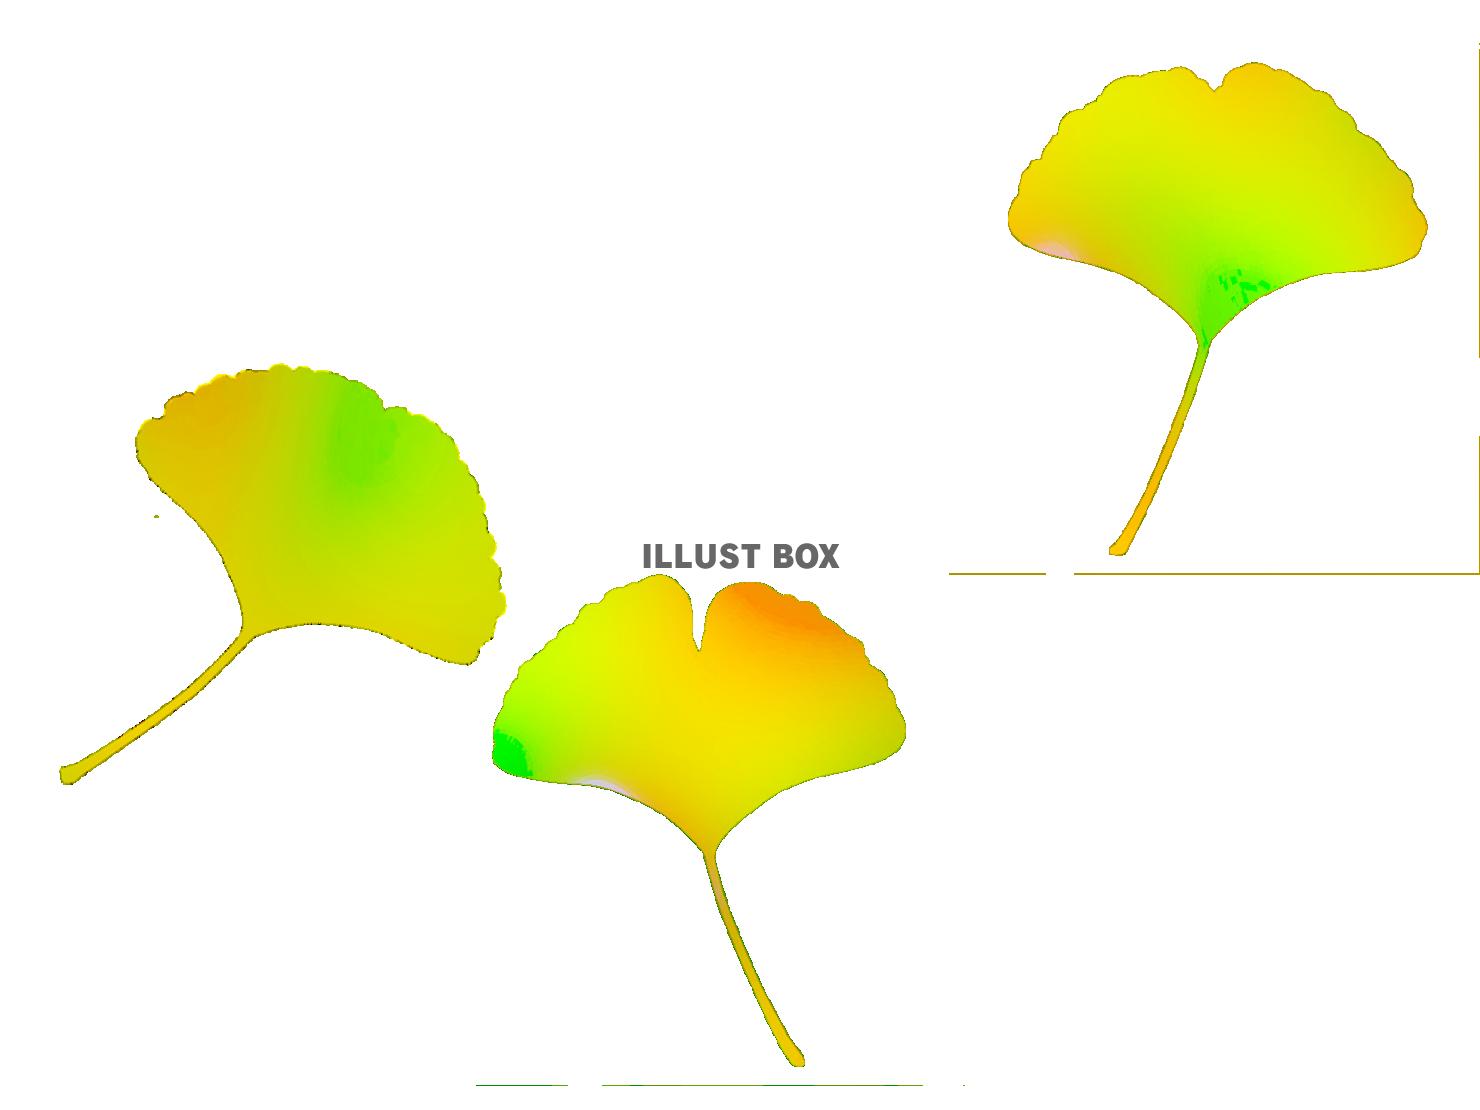 銀杏の葉っぱ壁紙シンプル背景素材イラスト。透過png